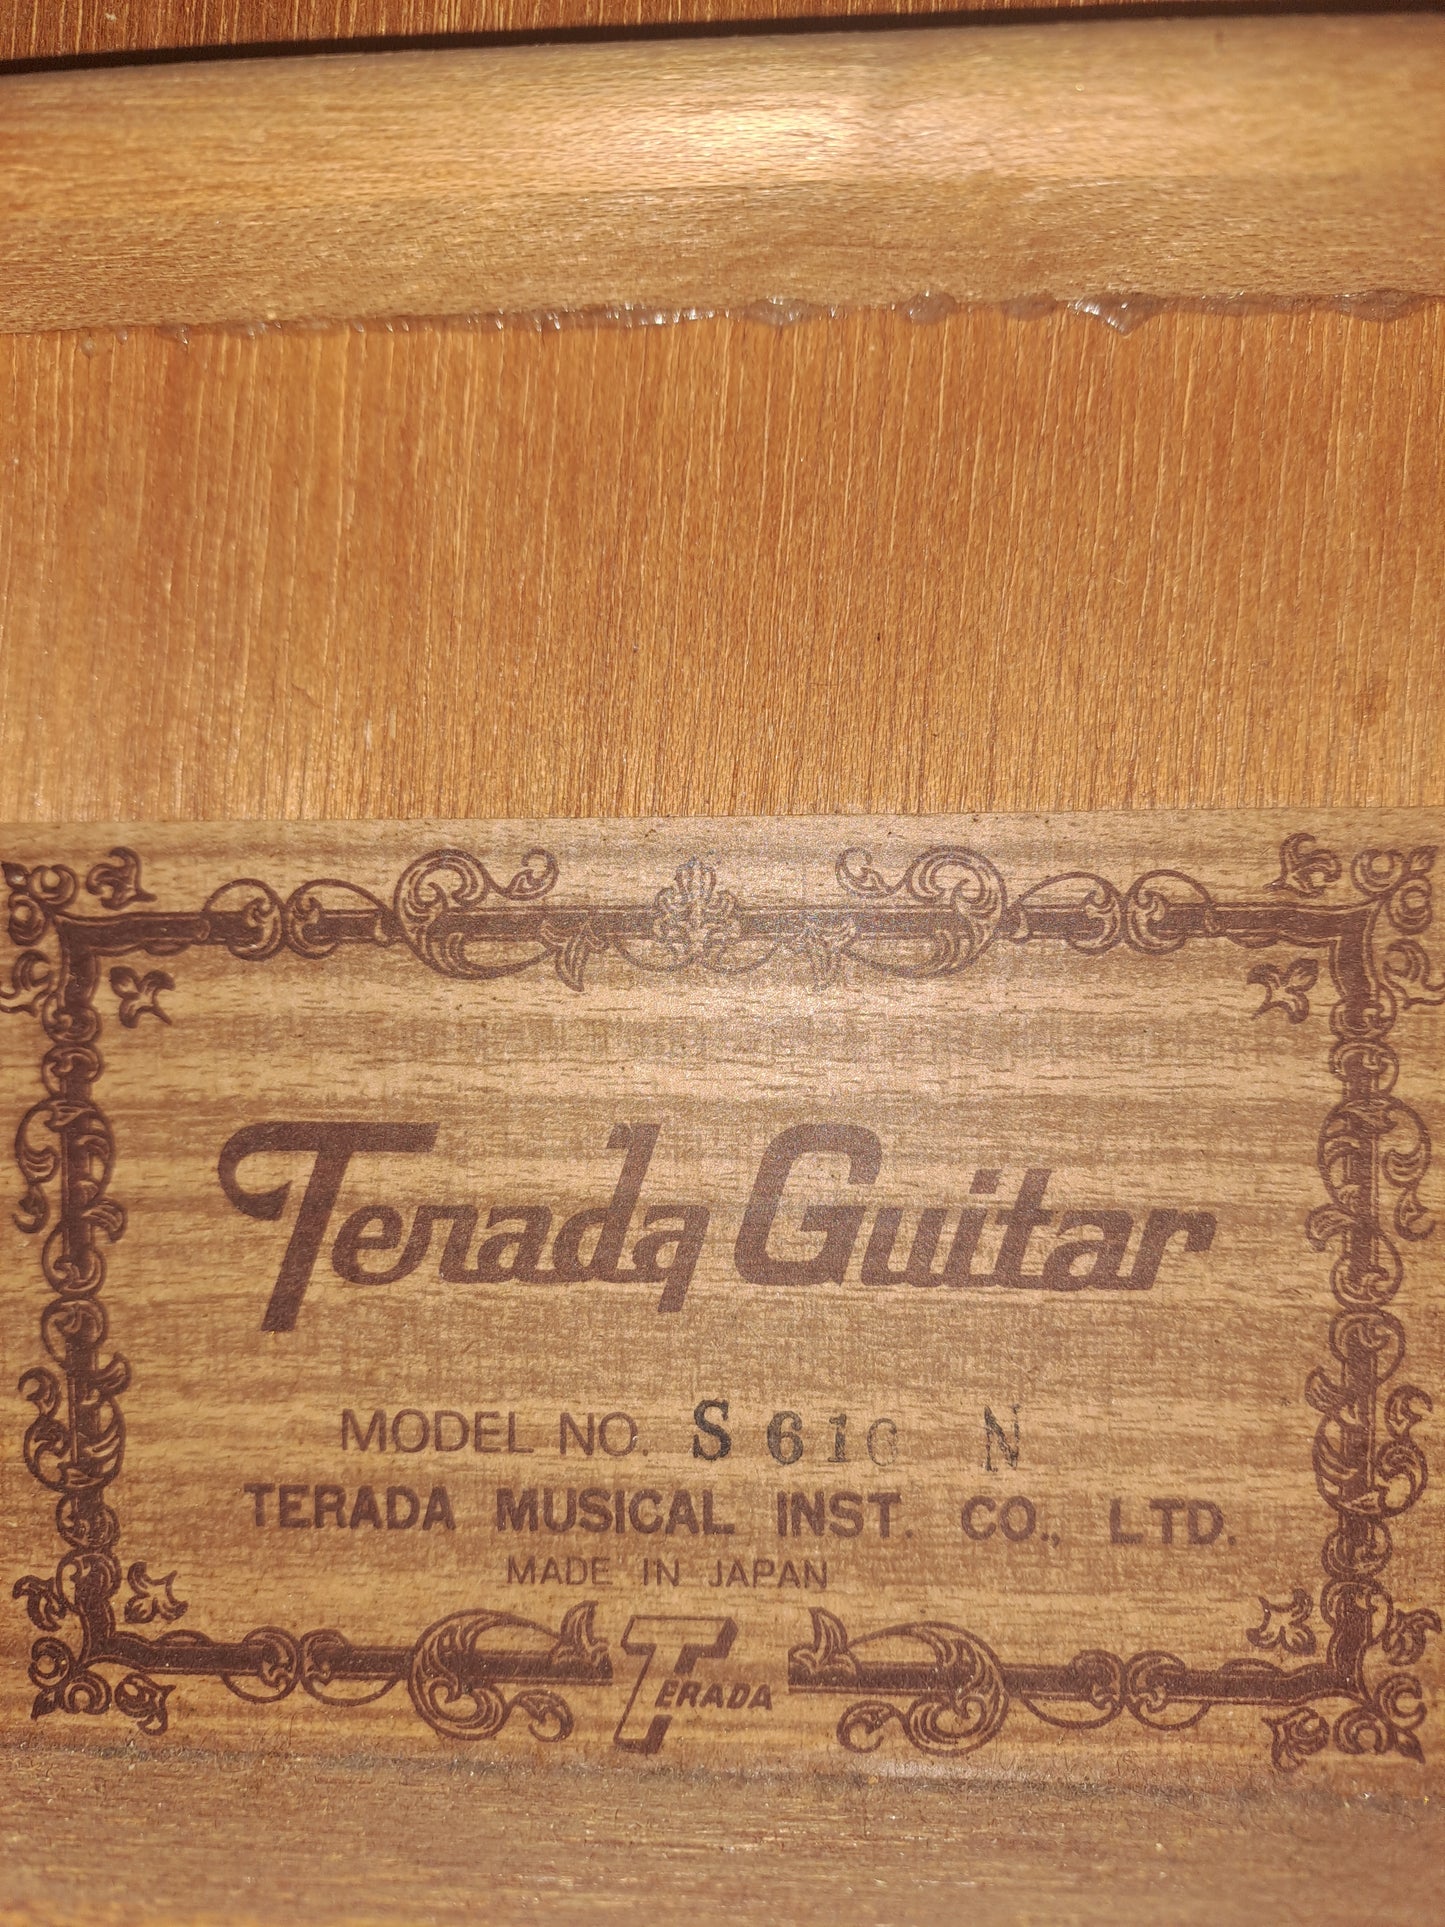 Terada Guitar Model S 616 N